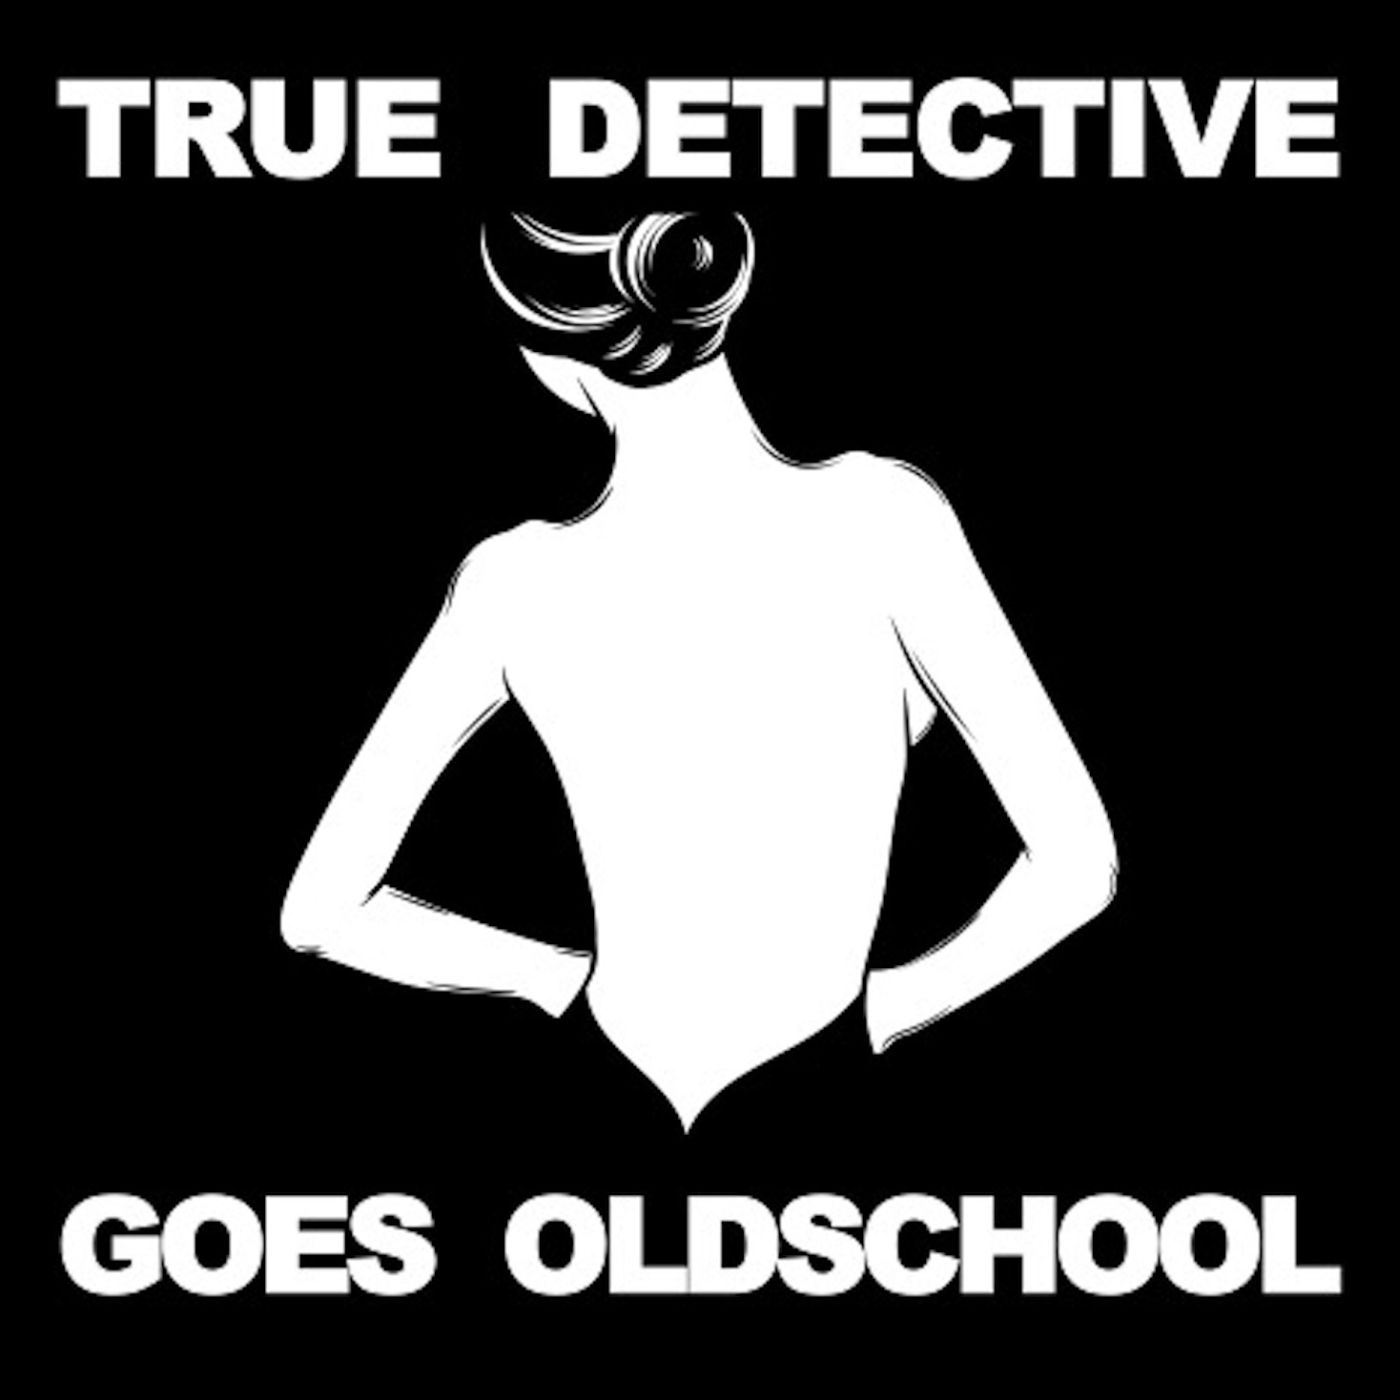 True Detective Goes Old School